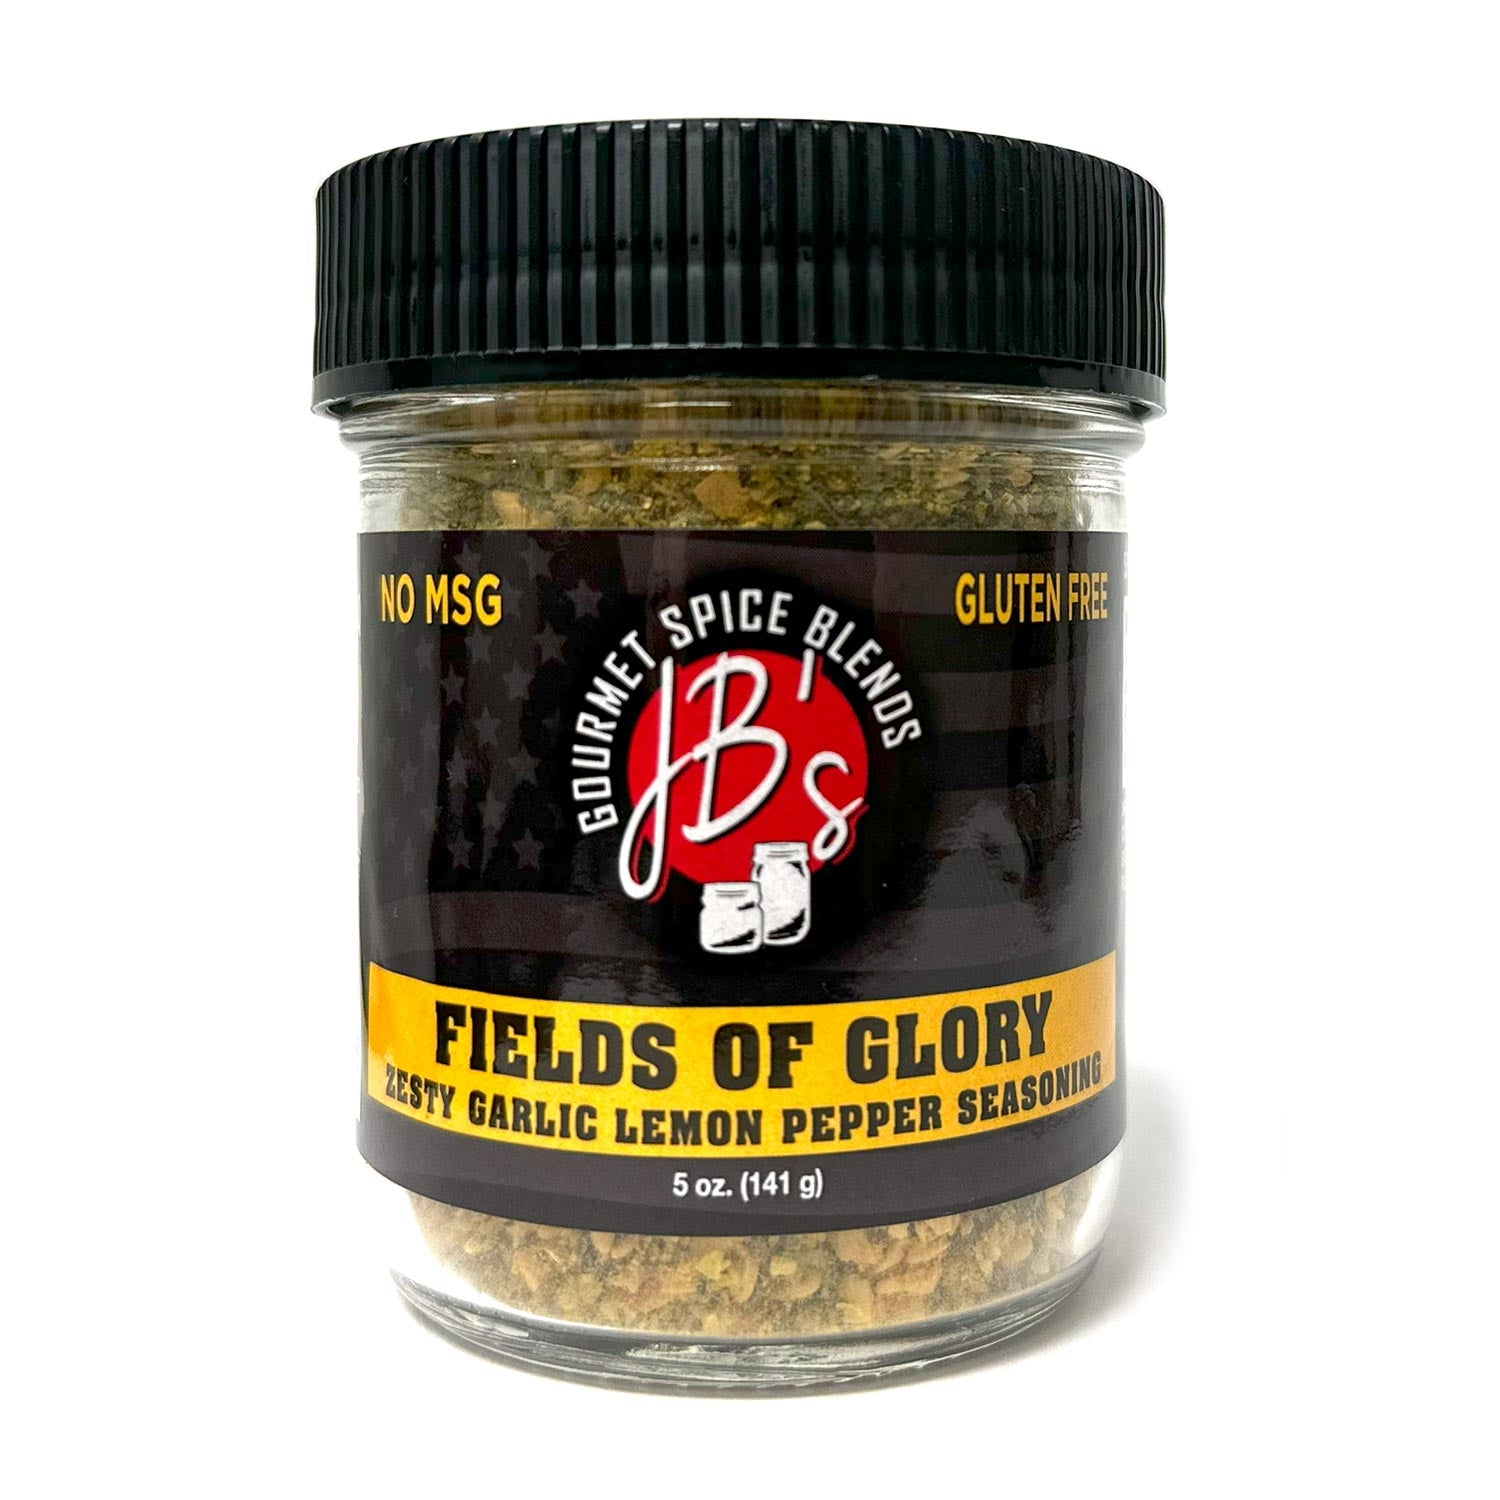 Fields of Glory (5oz Jar) JB's Gourmet Spice Blends